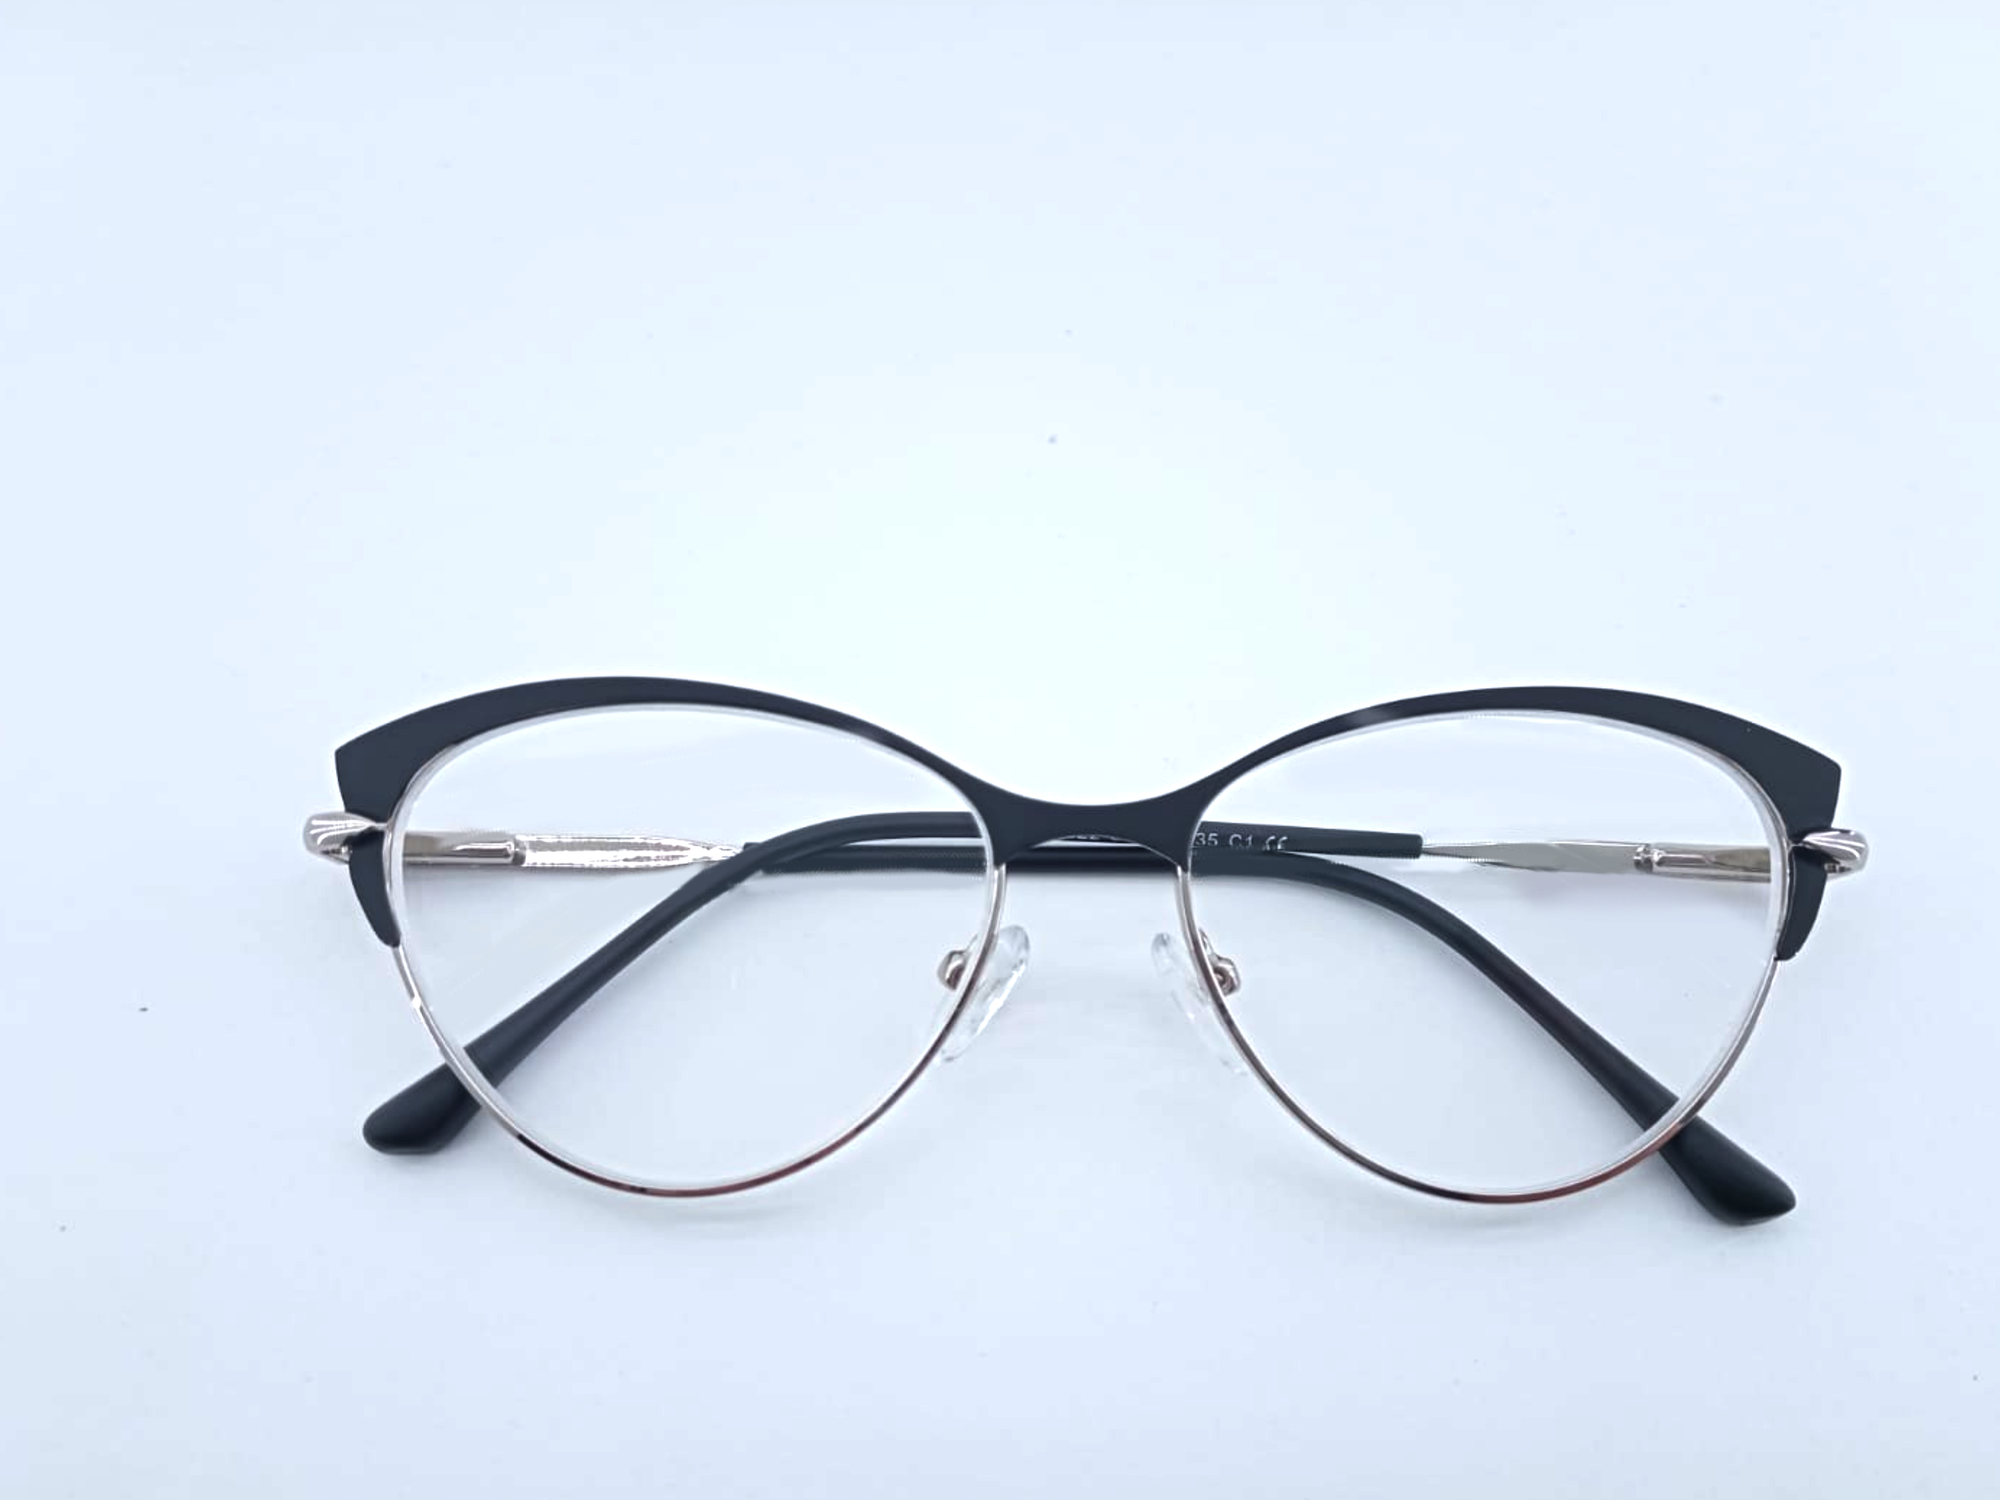 Готовые очки для зрения с межцентровым расстоянием 58-60 мм и диоптриями +4.0